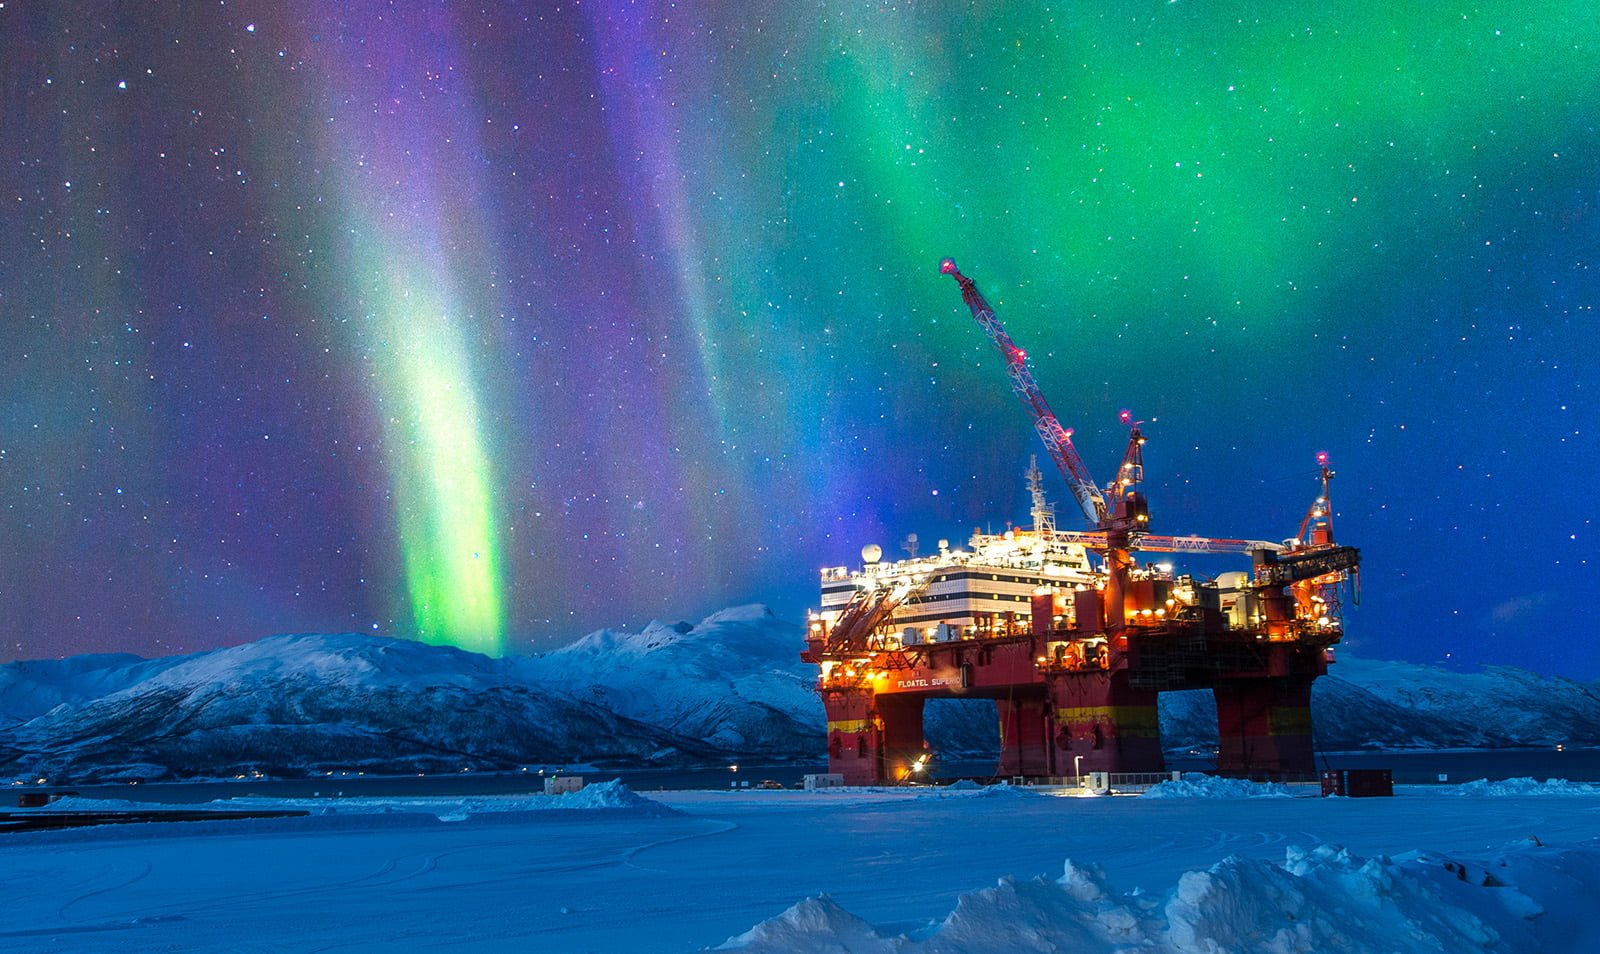 Norway oil rig